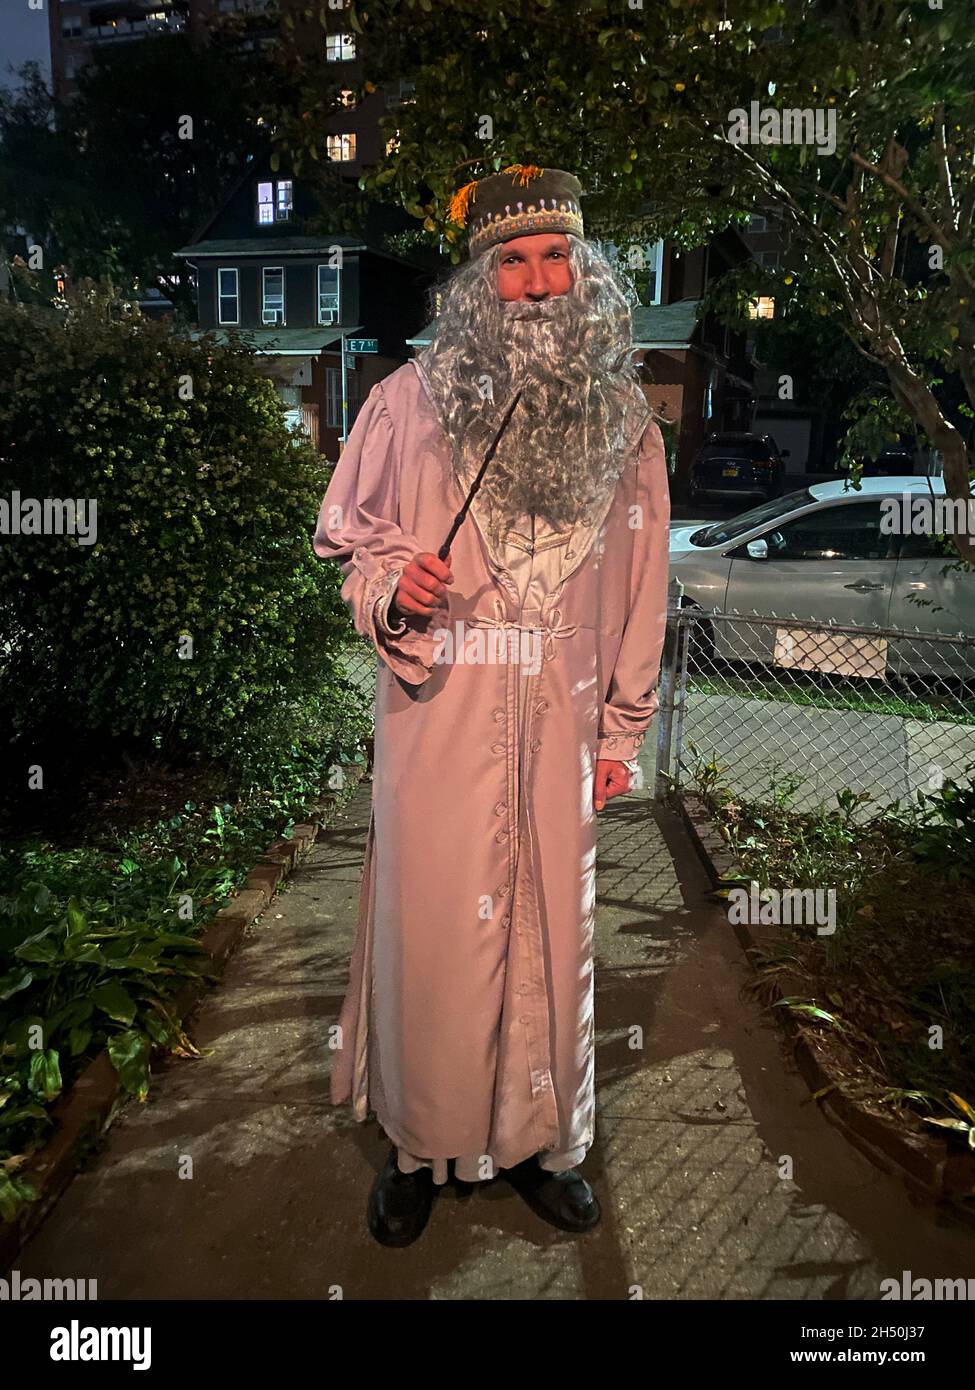 Ritratto di un uomo che va ad una festa di Halloween come il mago Dumbledore dai libri di Harry Potter. Sera, Brooklyn, New York. Foto Stock